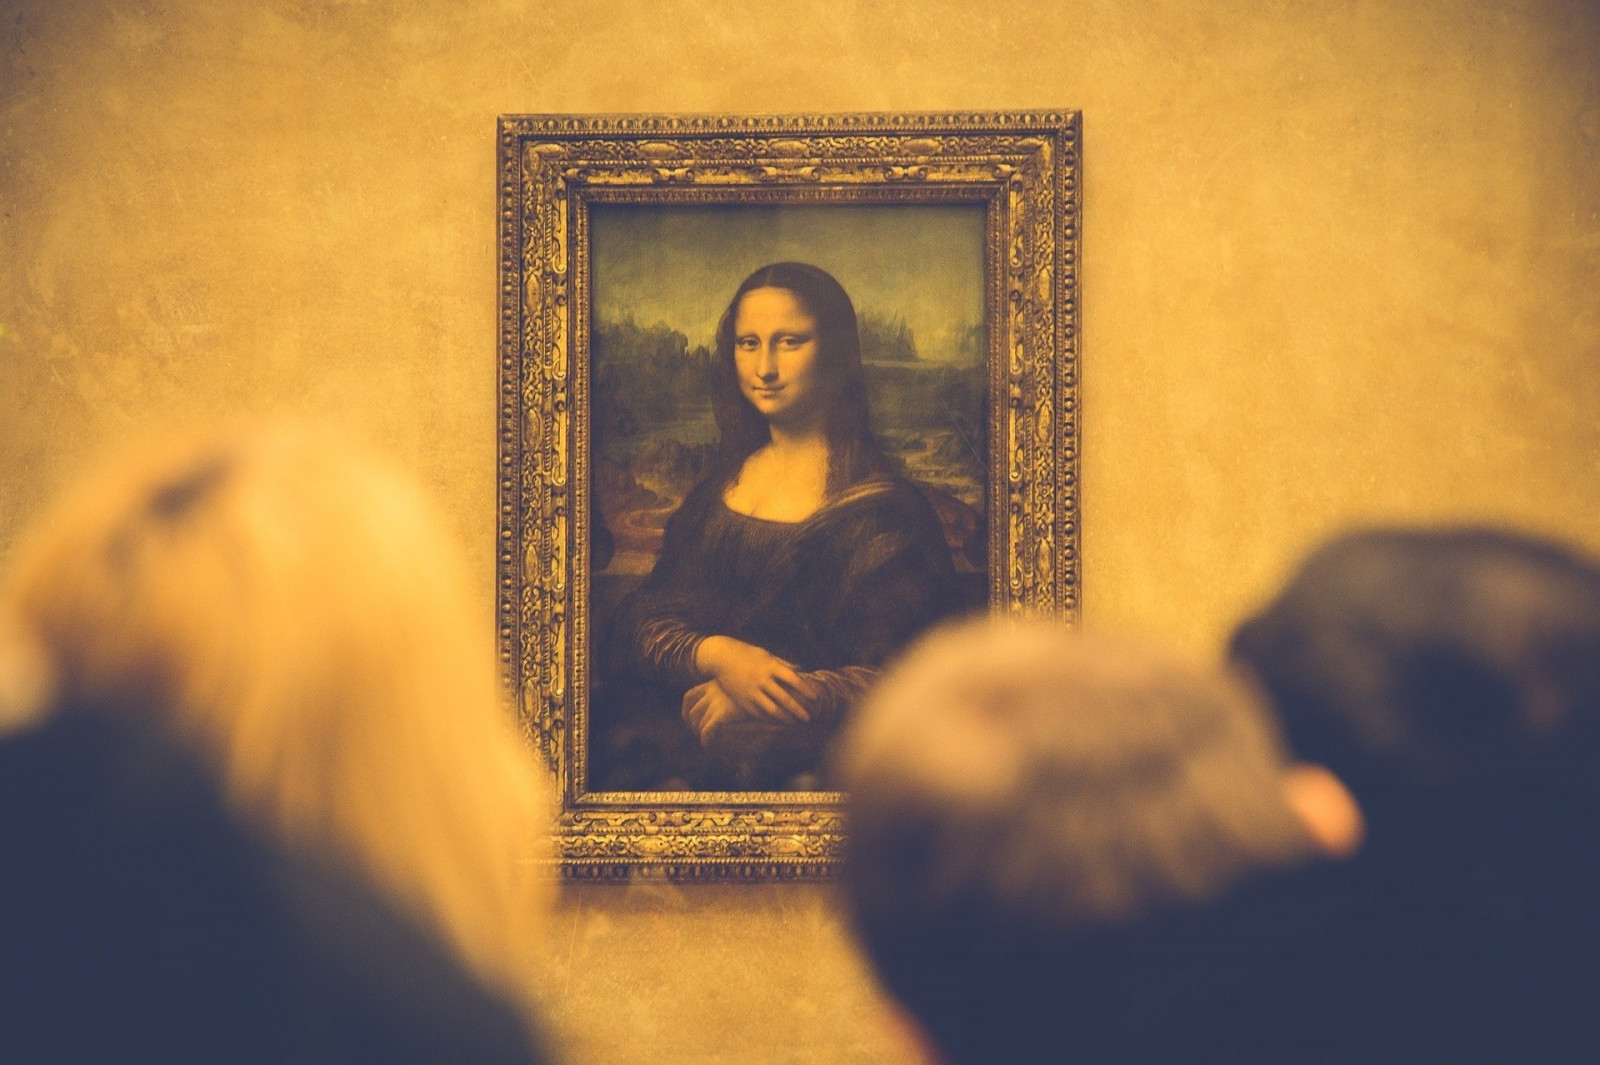 Na zdjęciu znajduje się portret Mona Lisy, w złotej ramie, wiszący na szarej ścianie. Na pierwszym planie widać tył głowy trzech osób, które patrzą na obraz. 